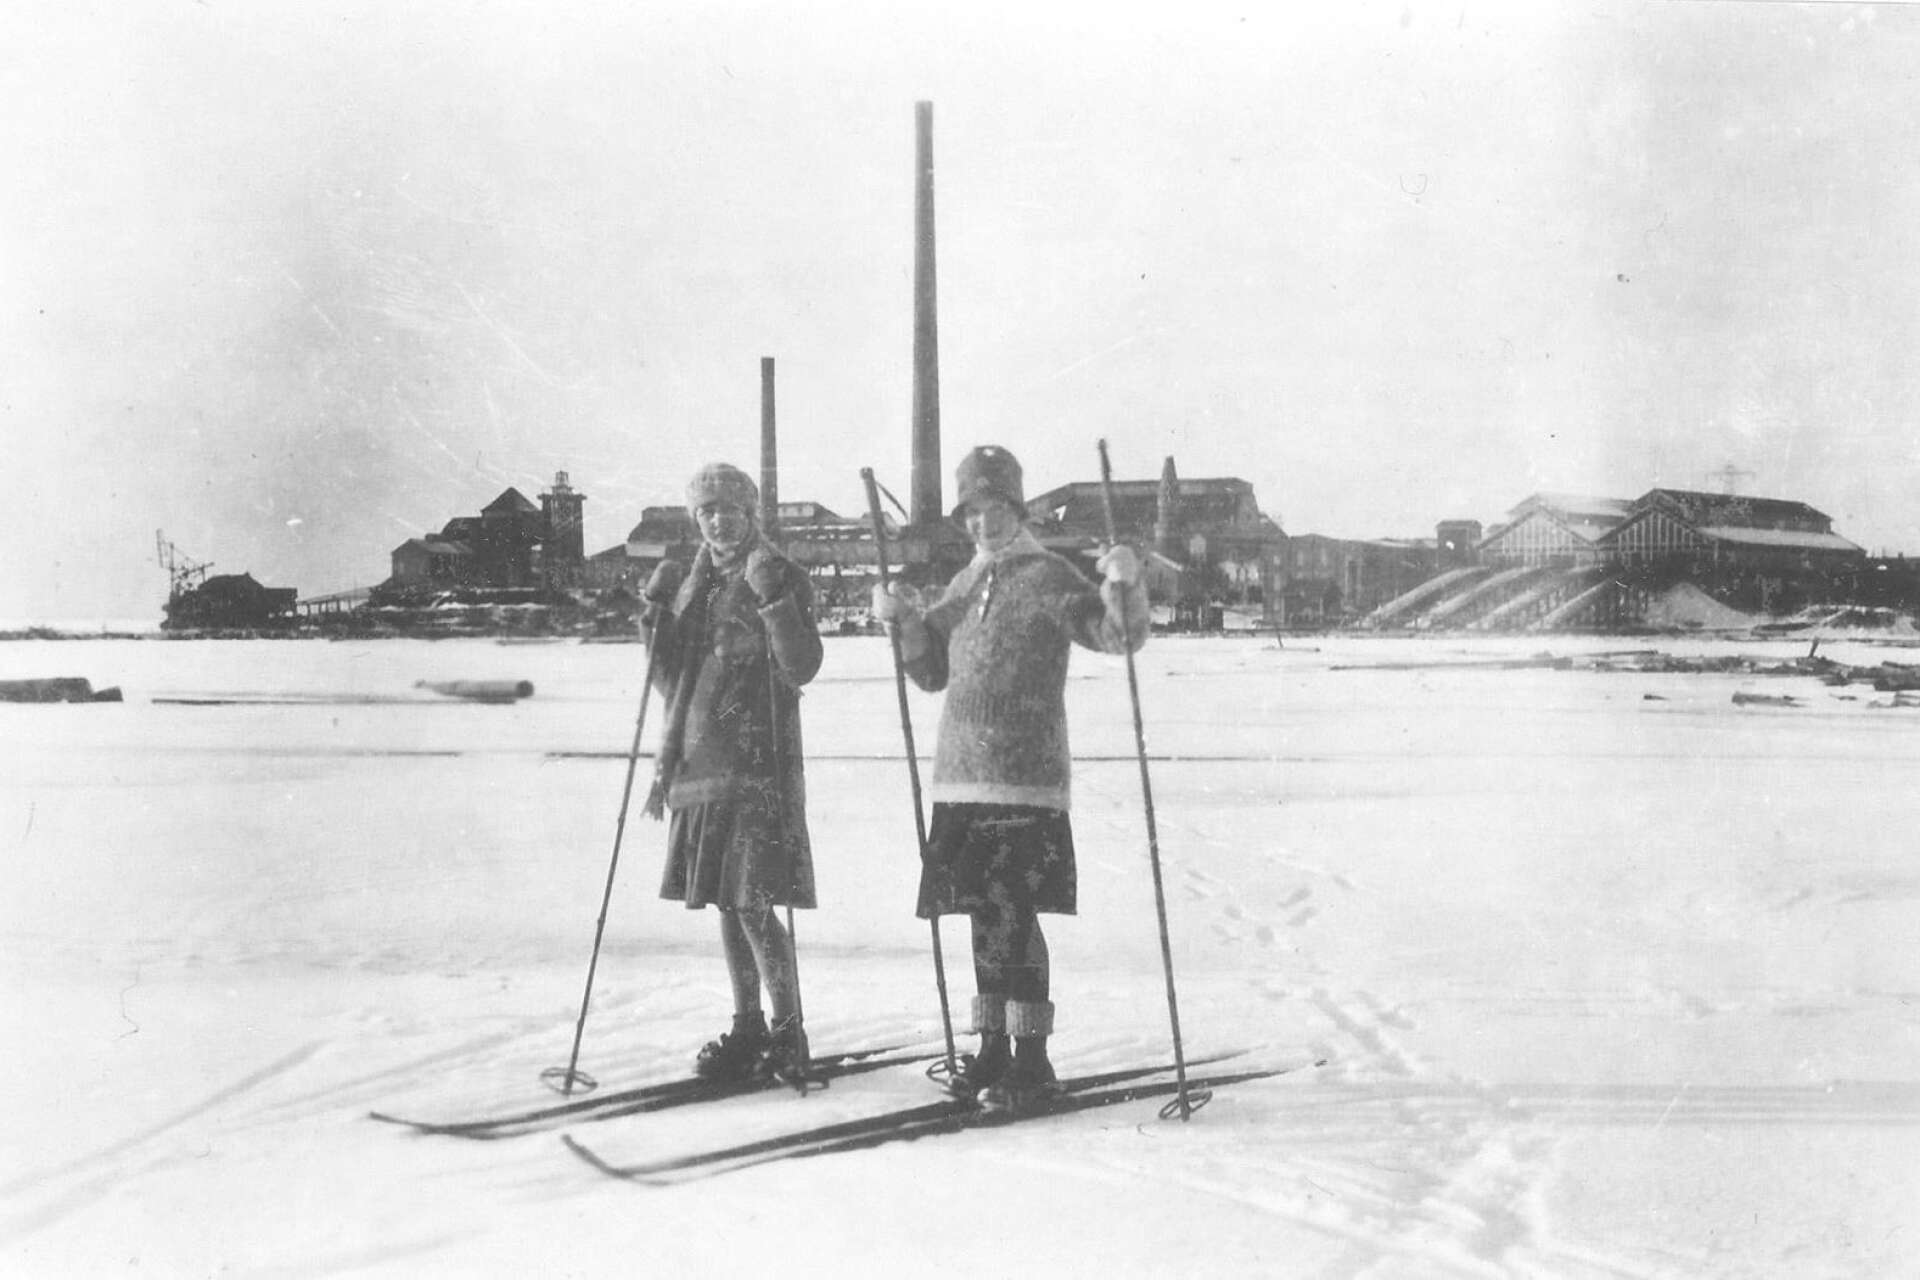 Flickor på skidor på isen utanför fabriken i Skoghall, fotoår omkring 1920-30. 